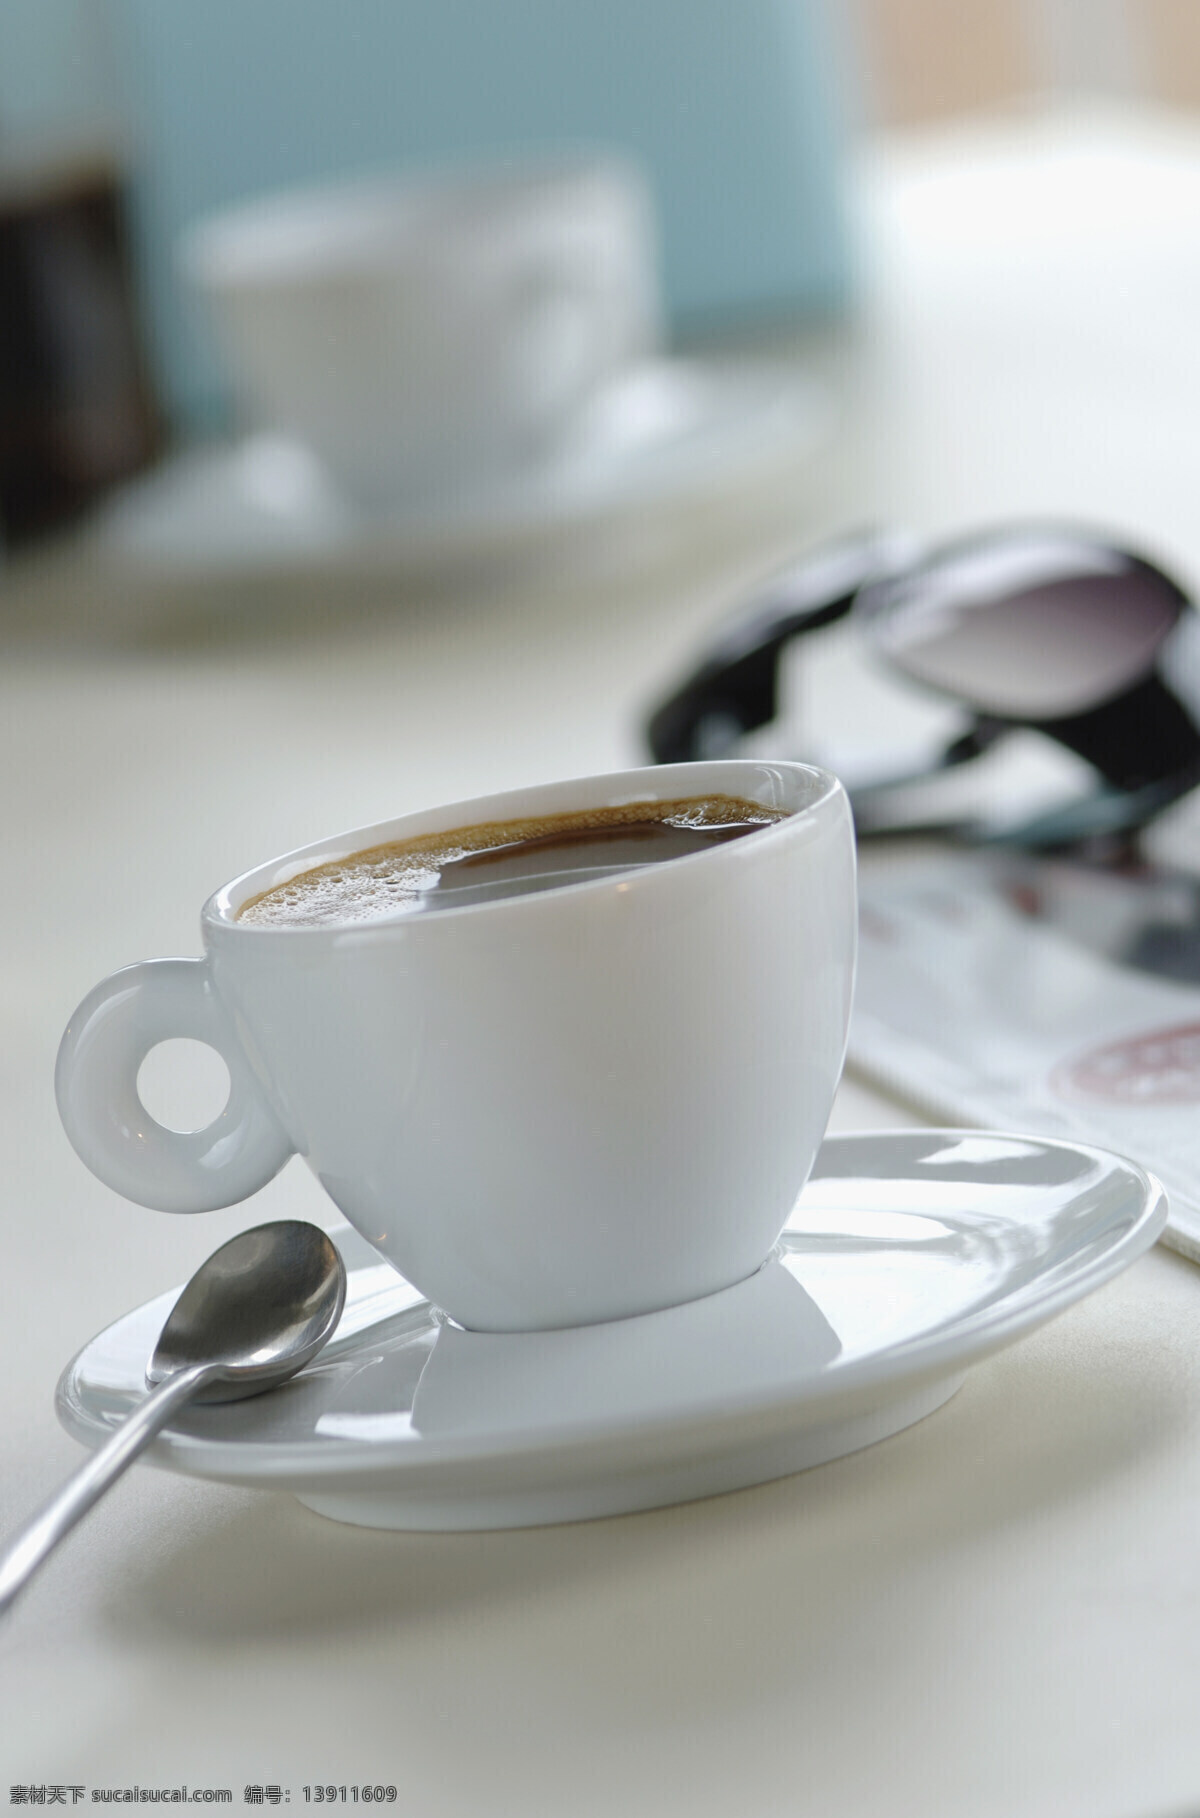 一杯 浓香 咖啡 提神 饮料 咖啡杯 托盘 白色 干净 勺子 铁勺 高清图片 咖啡图片 餐饮美食